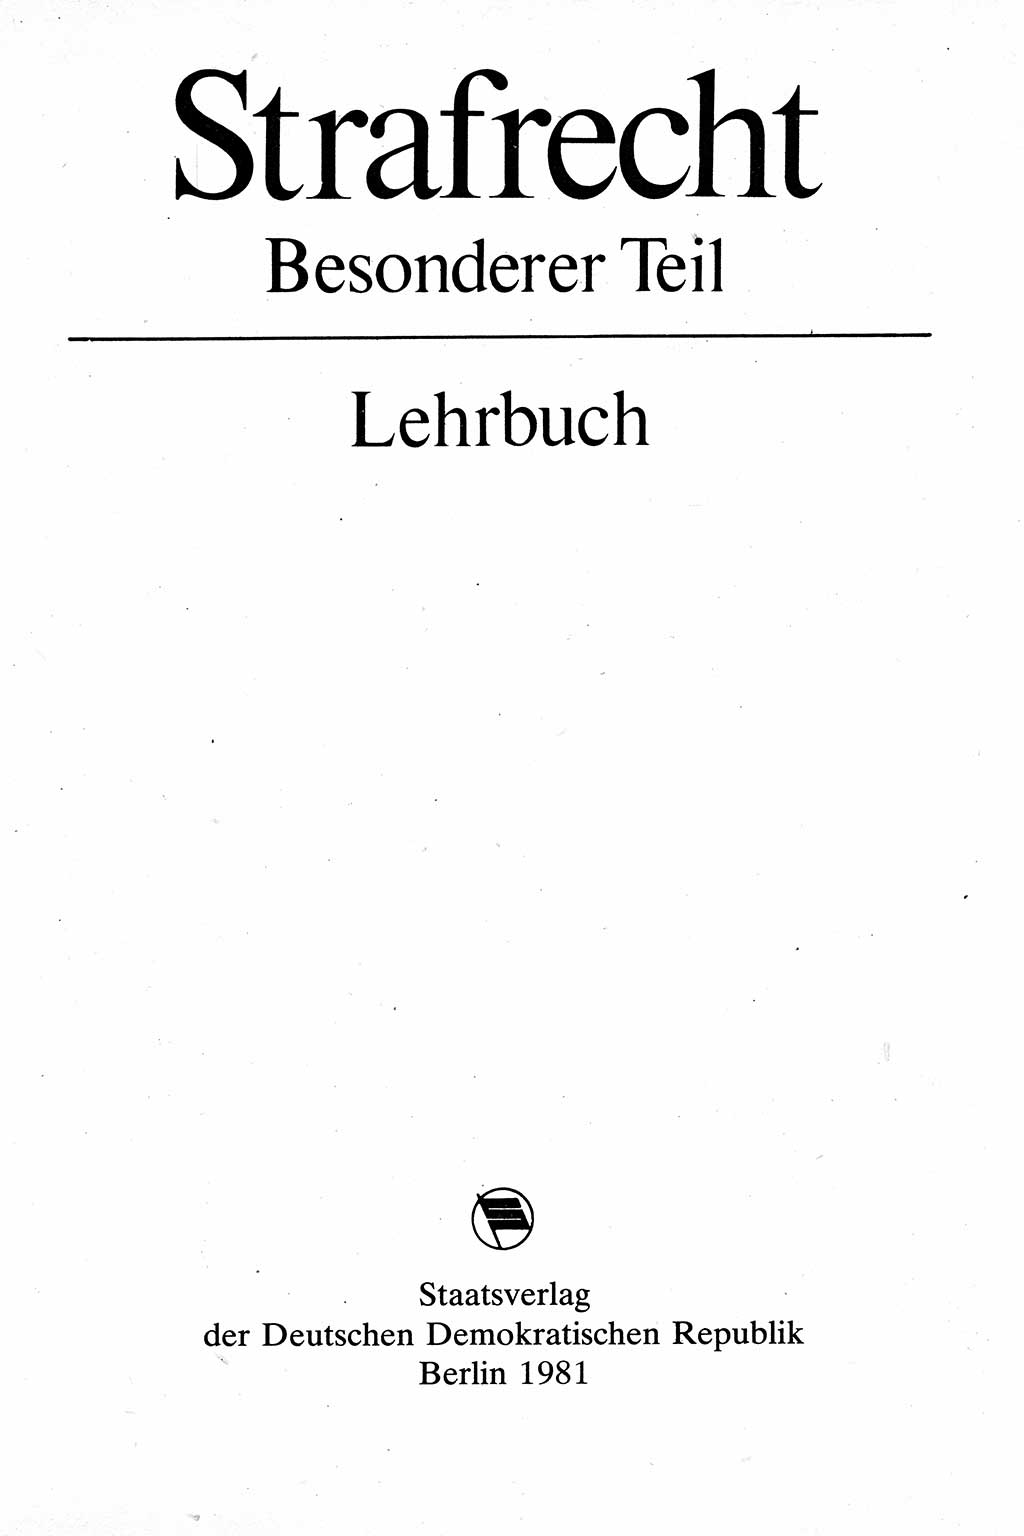 Strafrecht [Deutsche Demokratische Republik (DDR)], Besonderer Teil, Lehrbuch 1981, Seite 3 (Strafr. DDR BT Lb. 1981, S. 3)